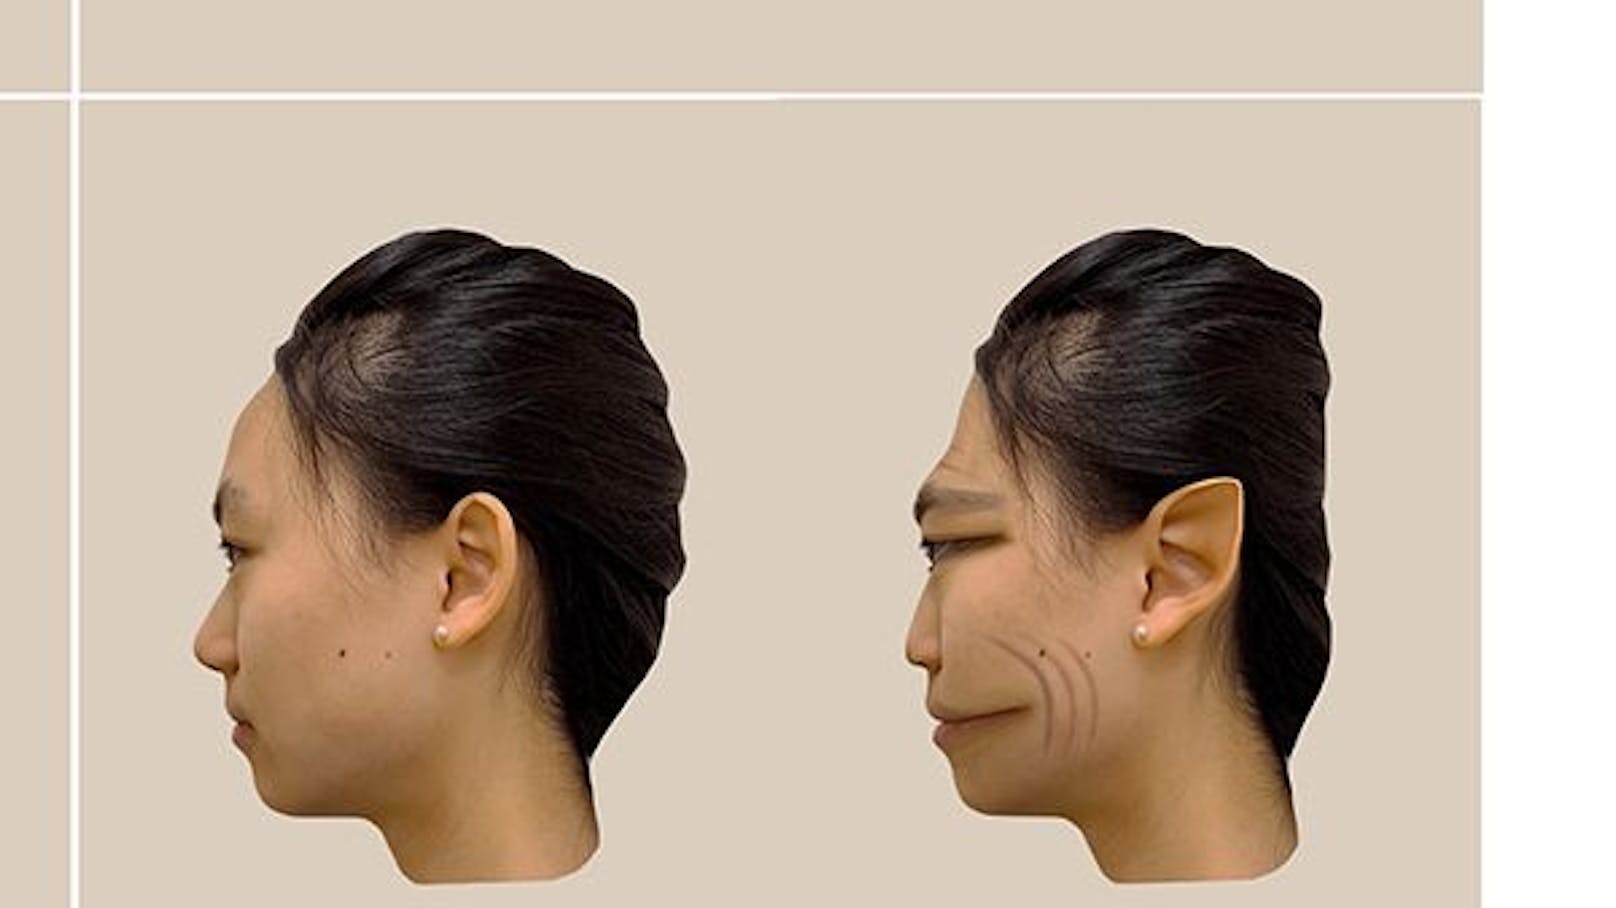 Erstmals konnten die PMO-Gesichtverzerrungen bildlich festgehalten werden (Bild).